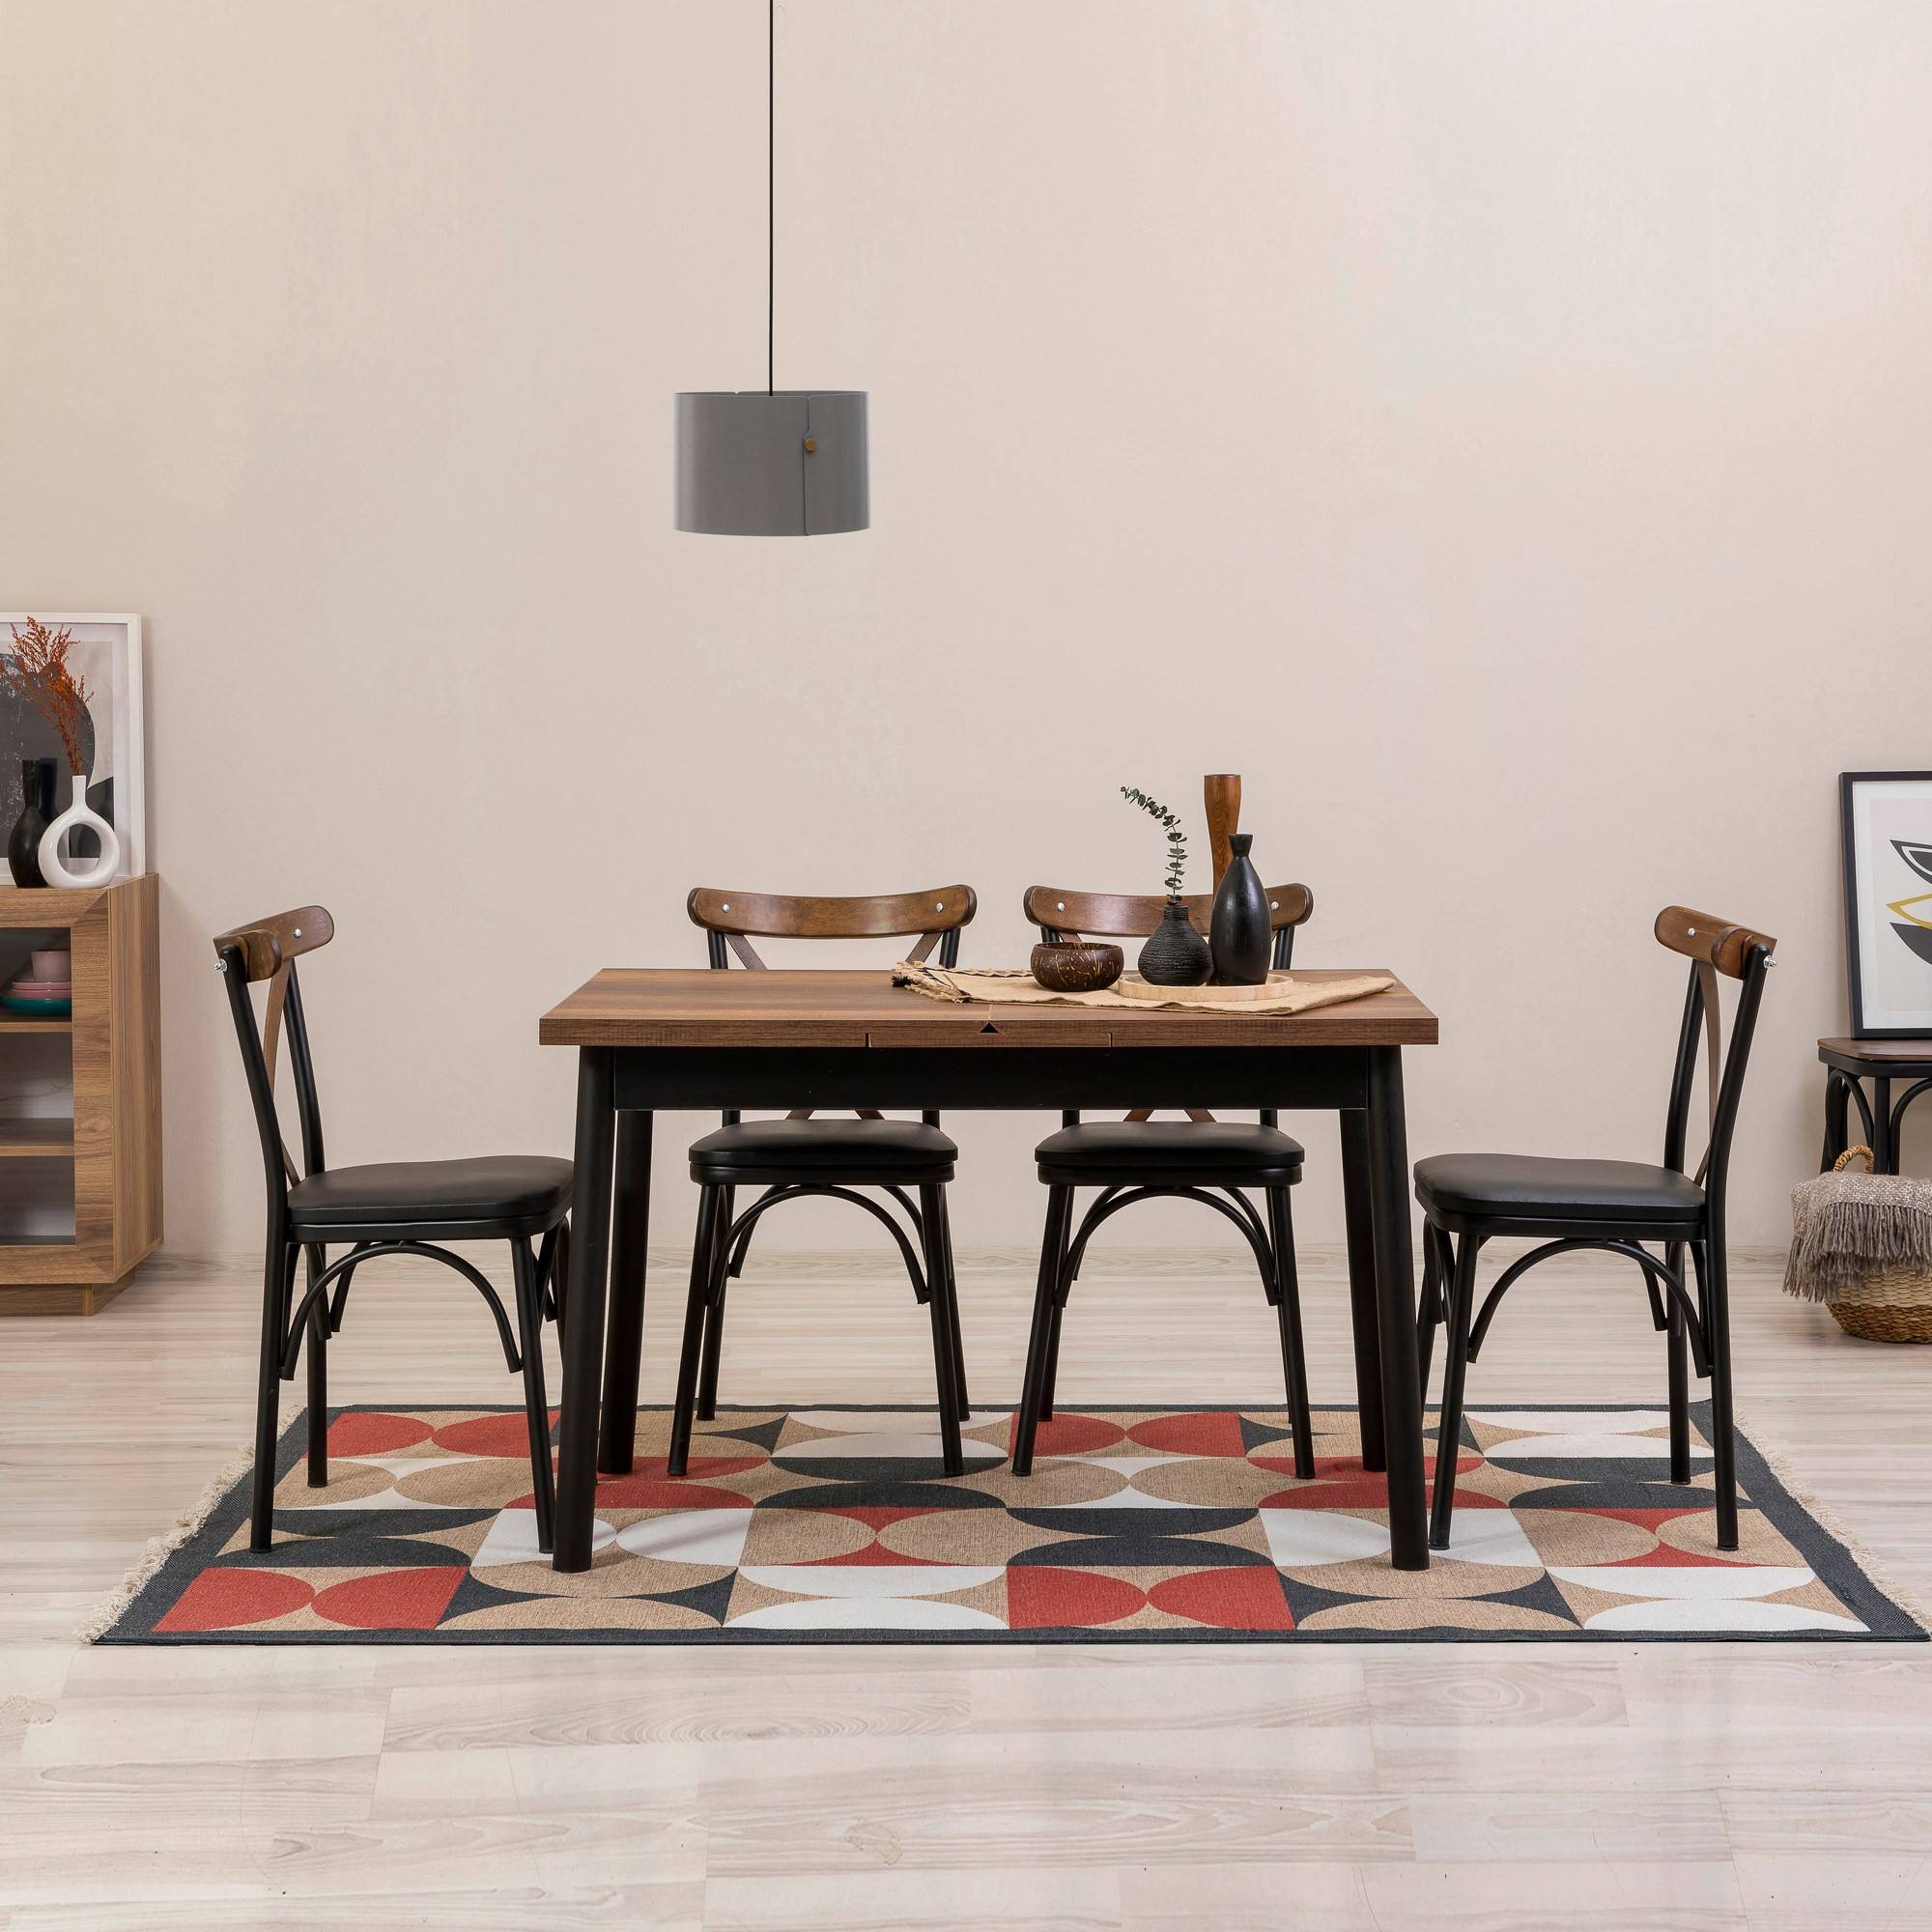 Banc en bois intérieur salon ou salle à manger design industriel STYL Choix  Dimensions 140 cm